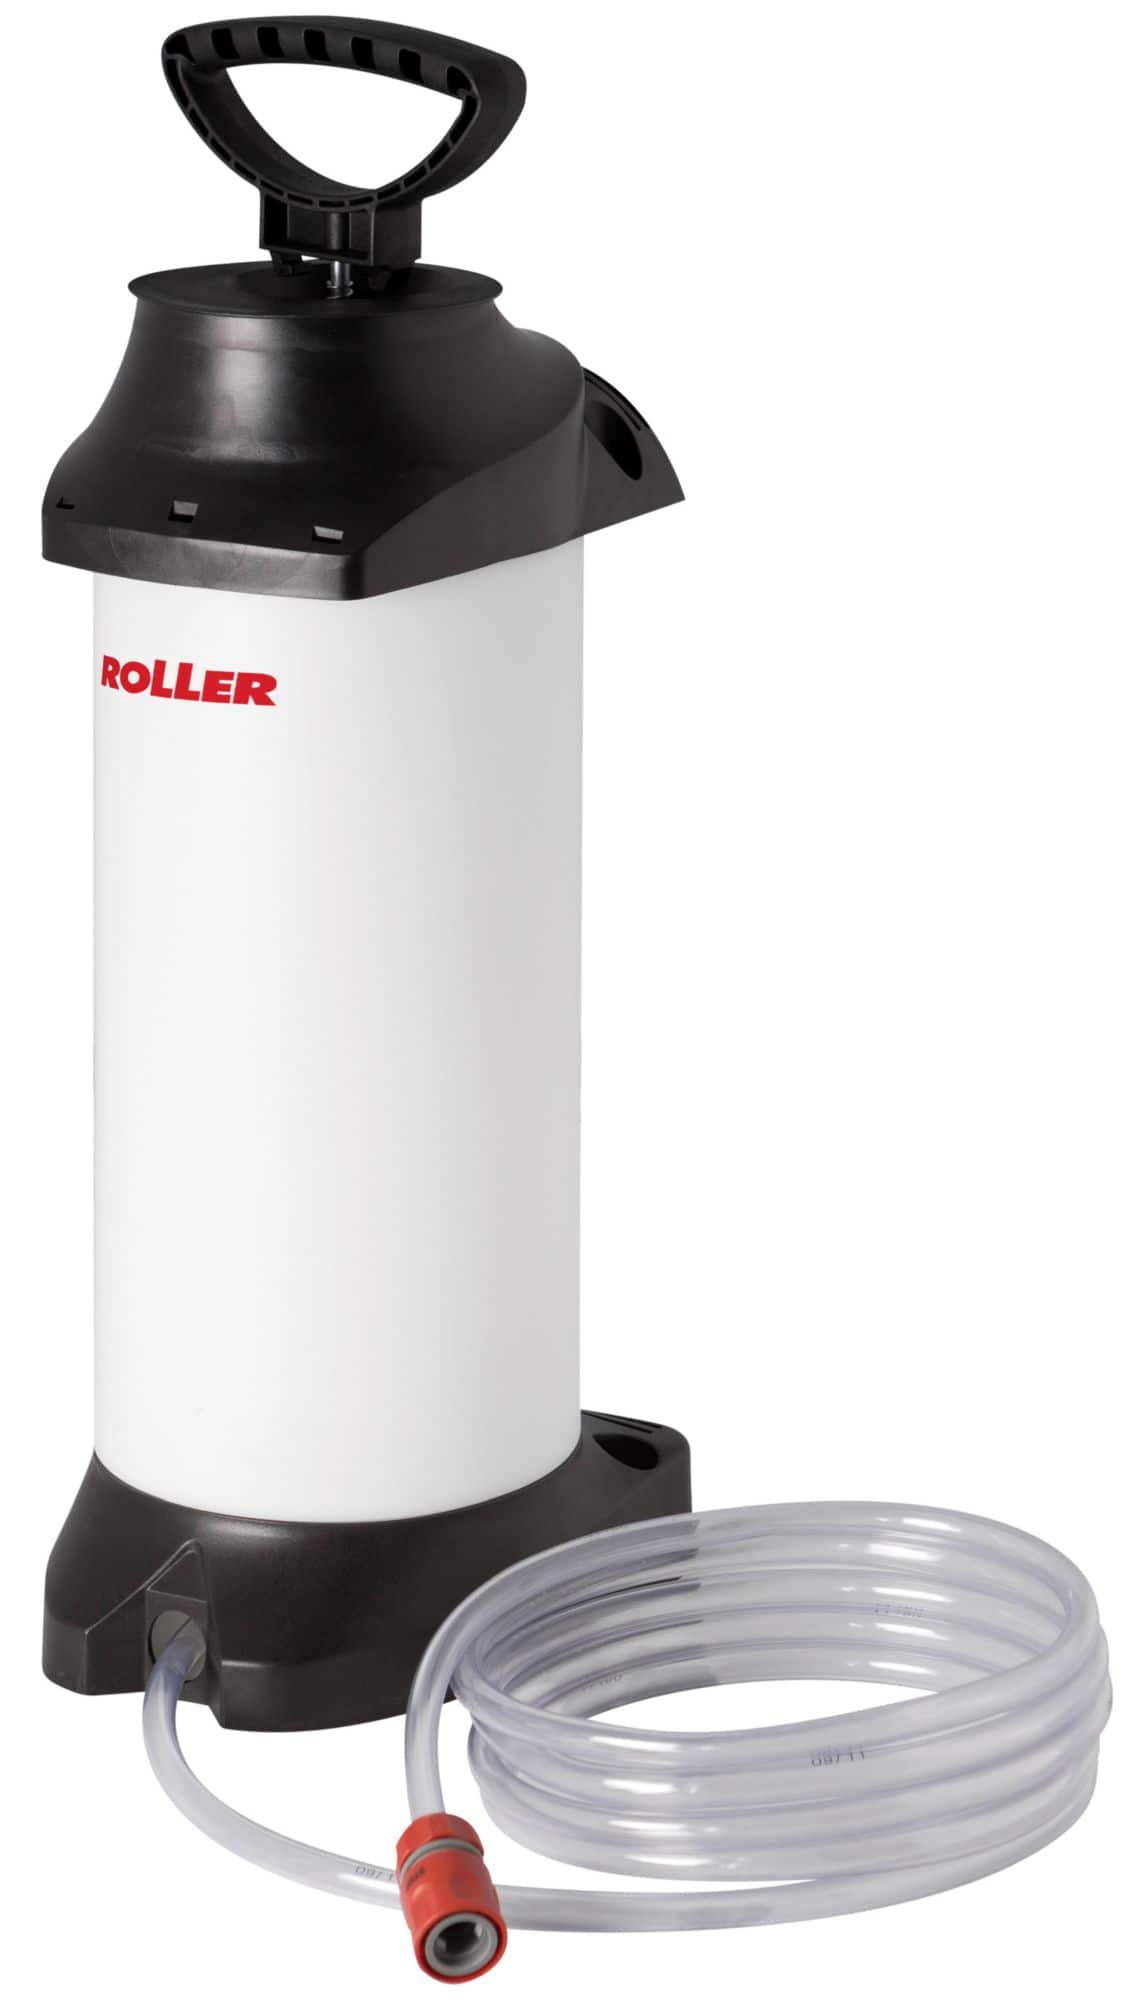 ROLLER'S Druckwasserbehälter, für 10 l Wasser - zum Nassbohren ohne Wasseranschluss